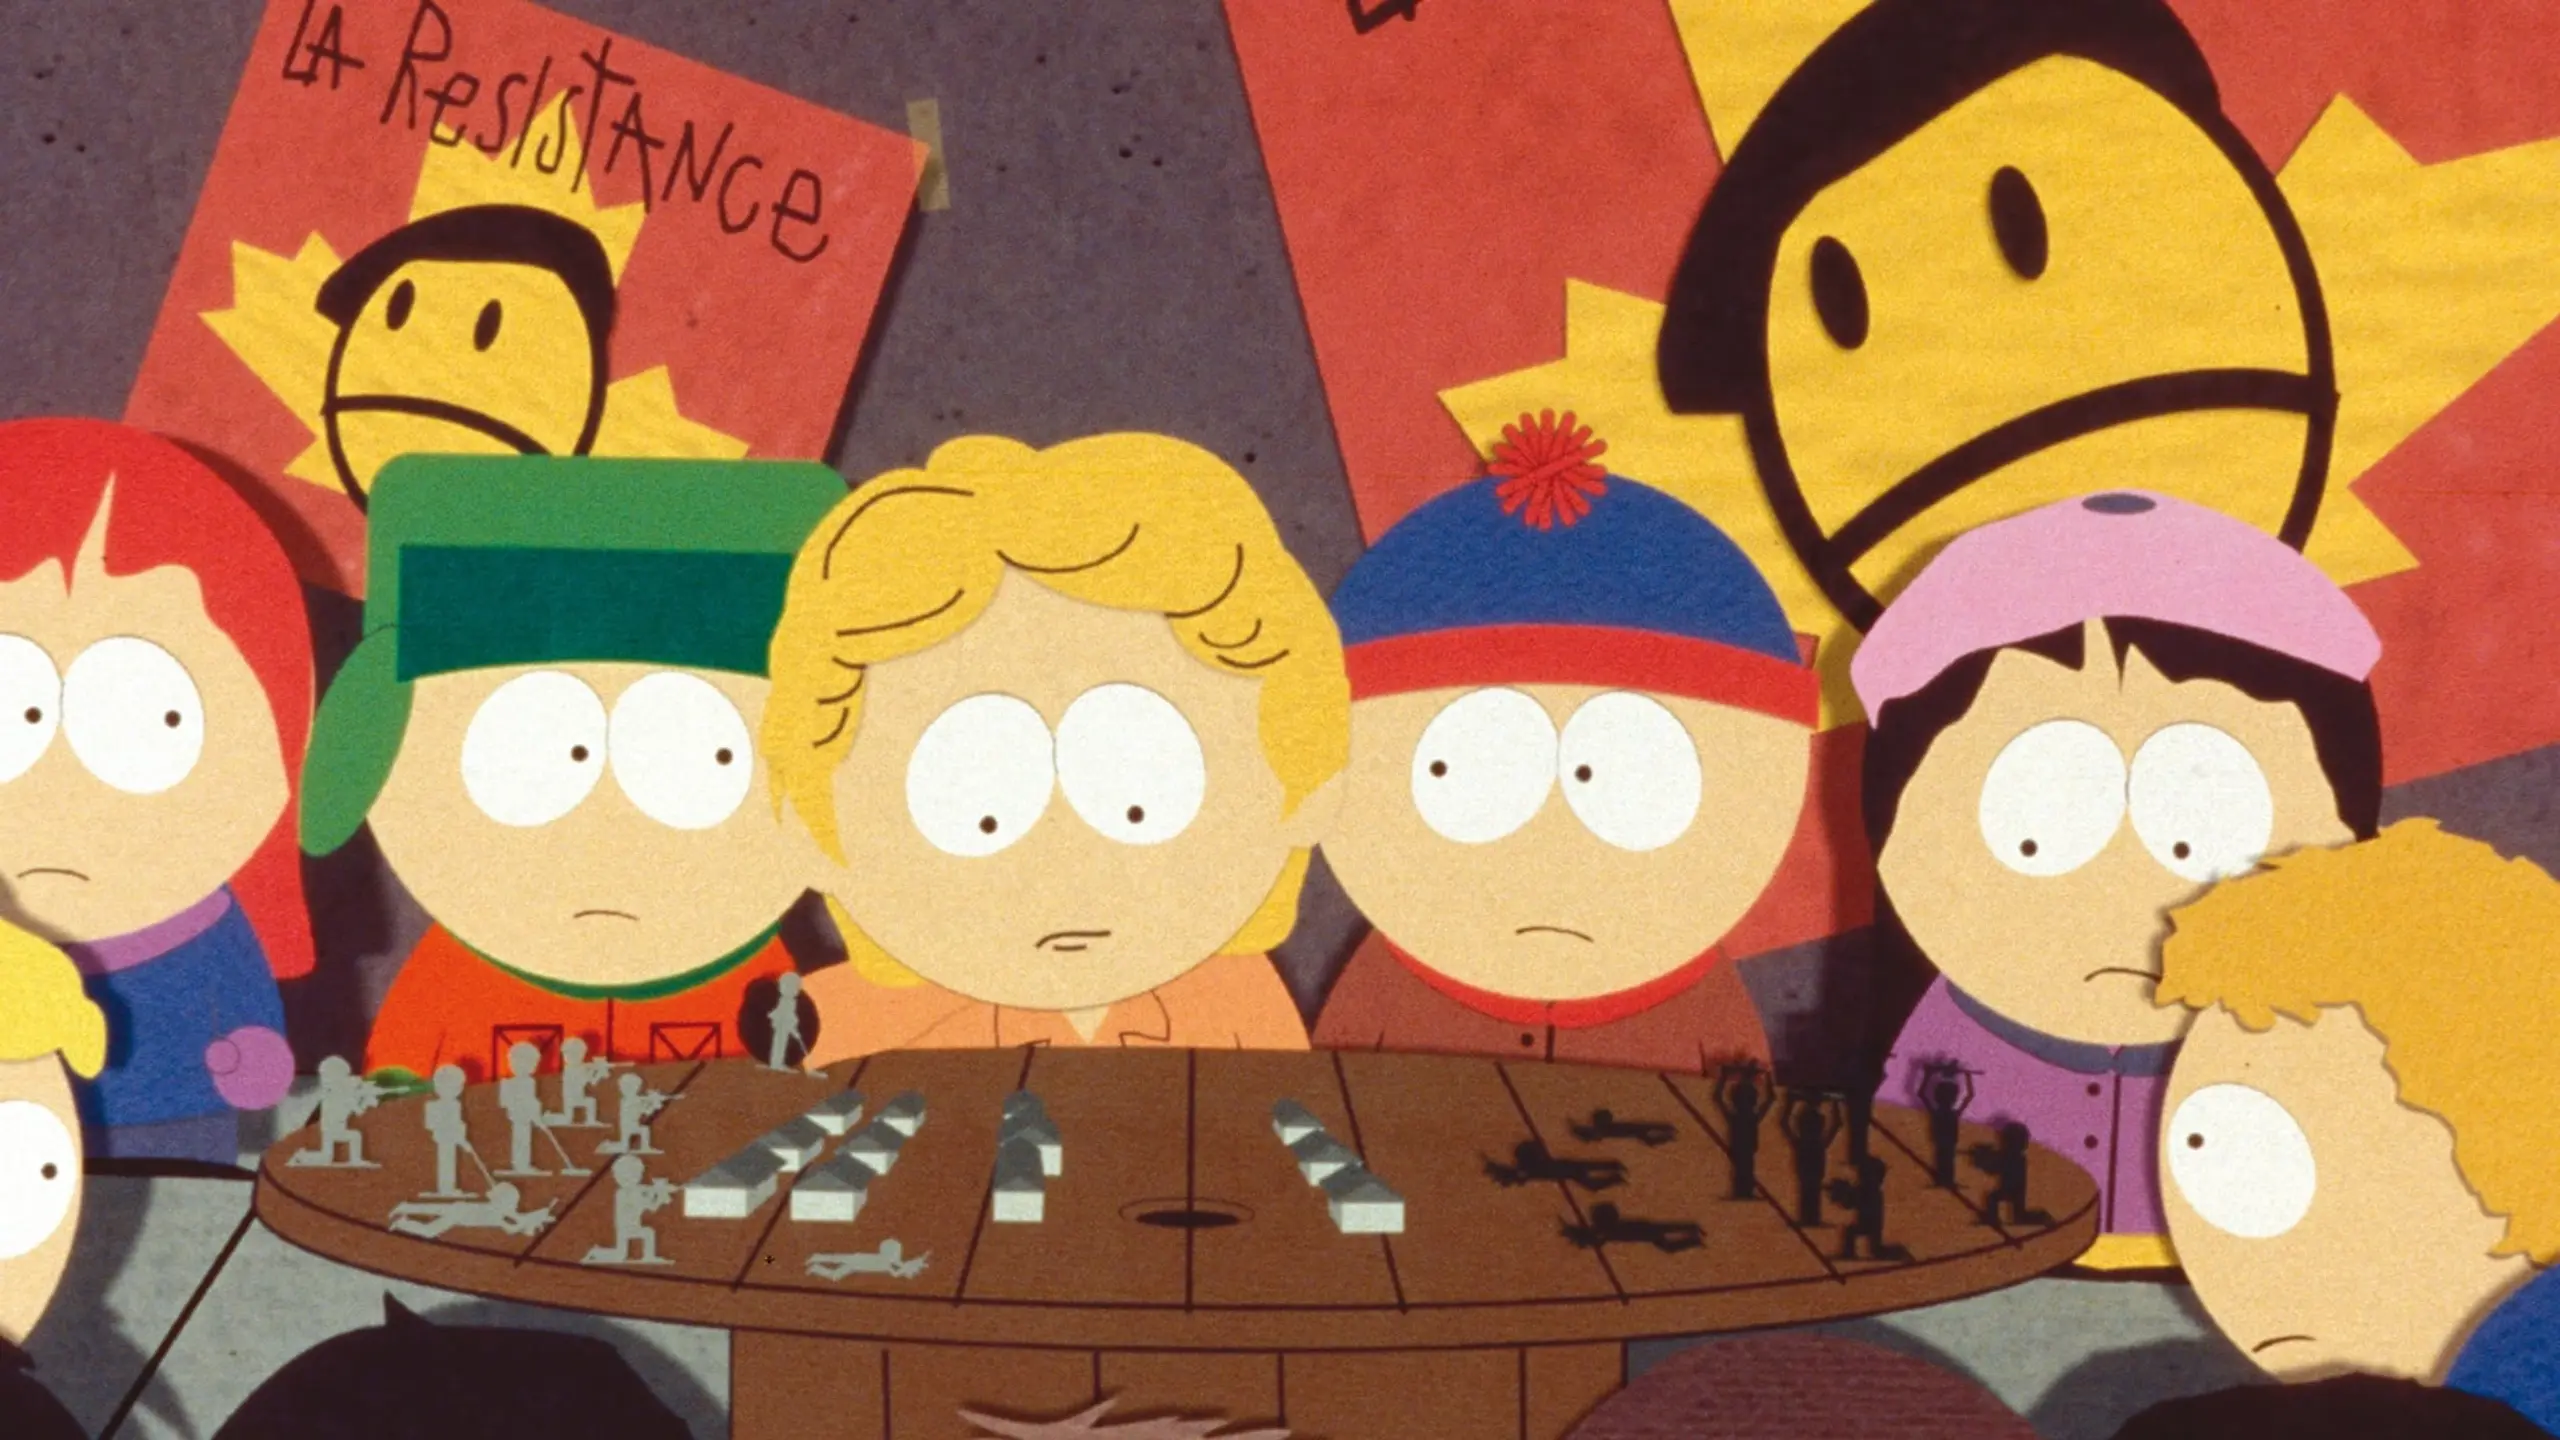 South Park: Der Film - größer, länger, ungeschnitten